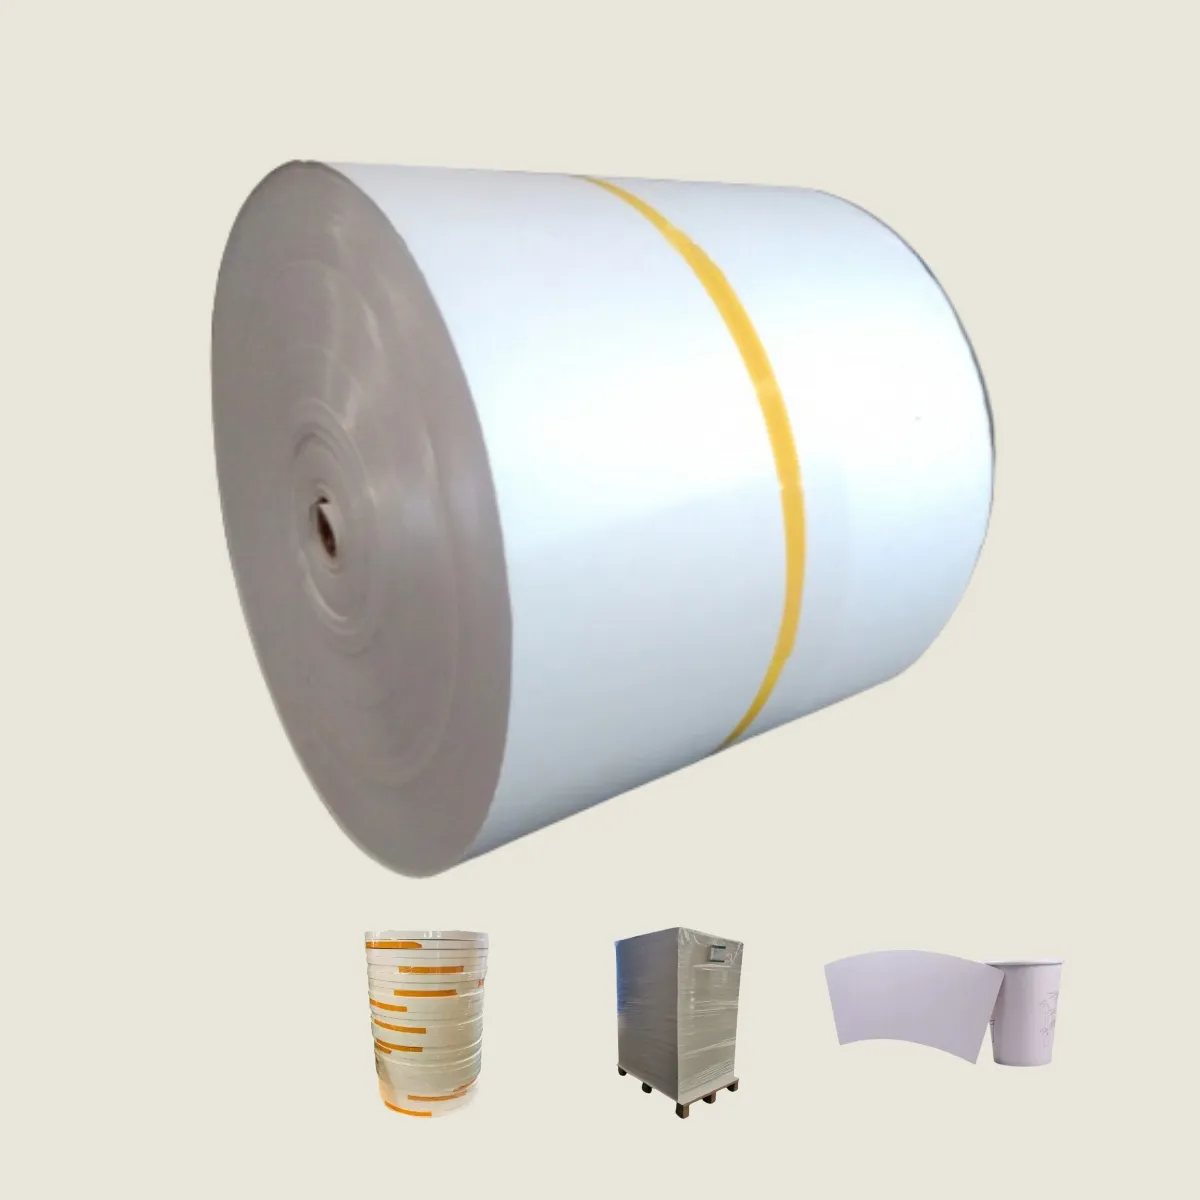 Prezzo di fabbrica tazza di carta patinata in polietilene carta rivestita tazza materie prime carta patinata rotolo tazza di carta